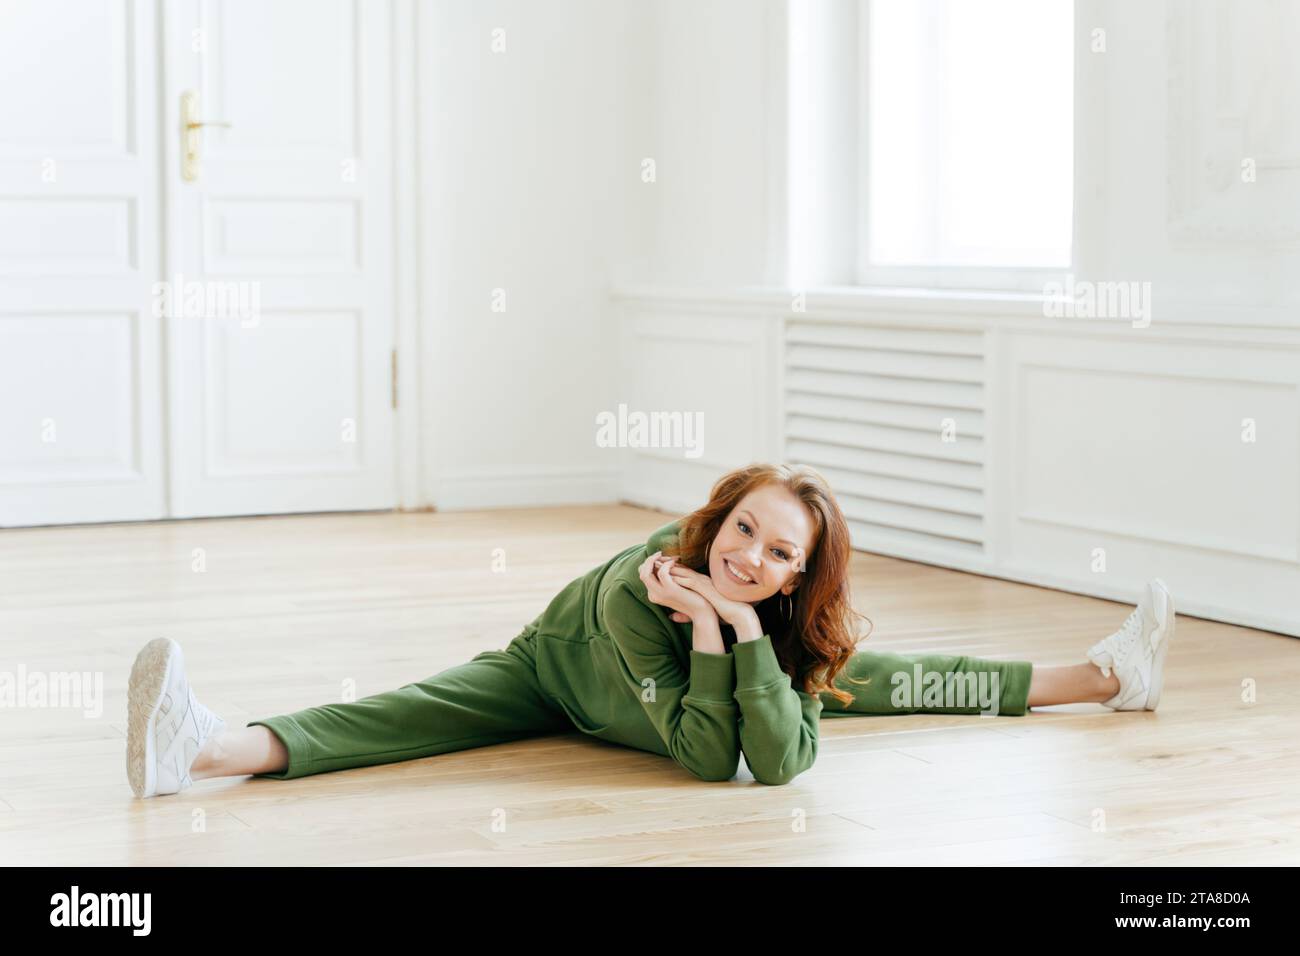 Entspannte Frau in grüner Loungewear, die auf Holzboden liegt, elegante weiße Innenausstattung, friedlicher Ausdruck und bequeme Pose Stockfoto